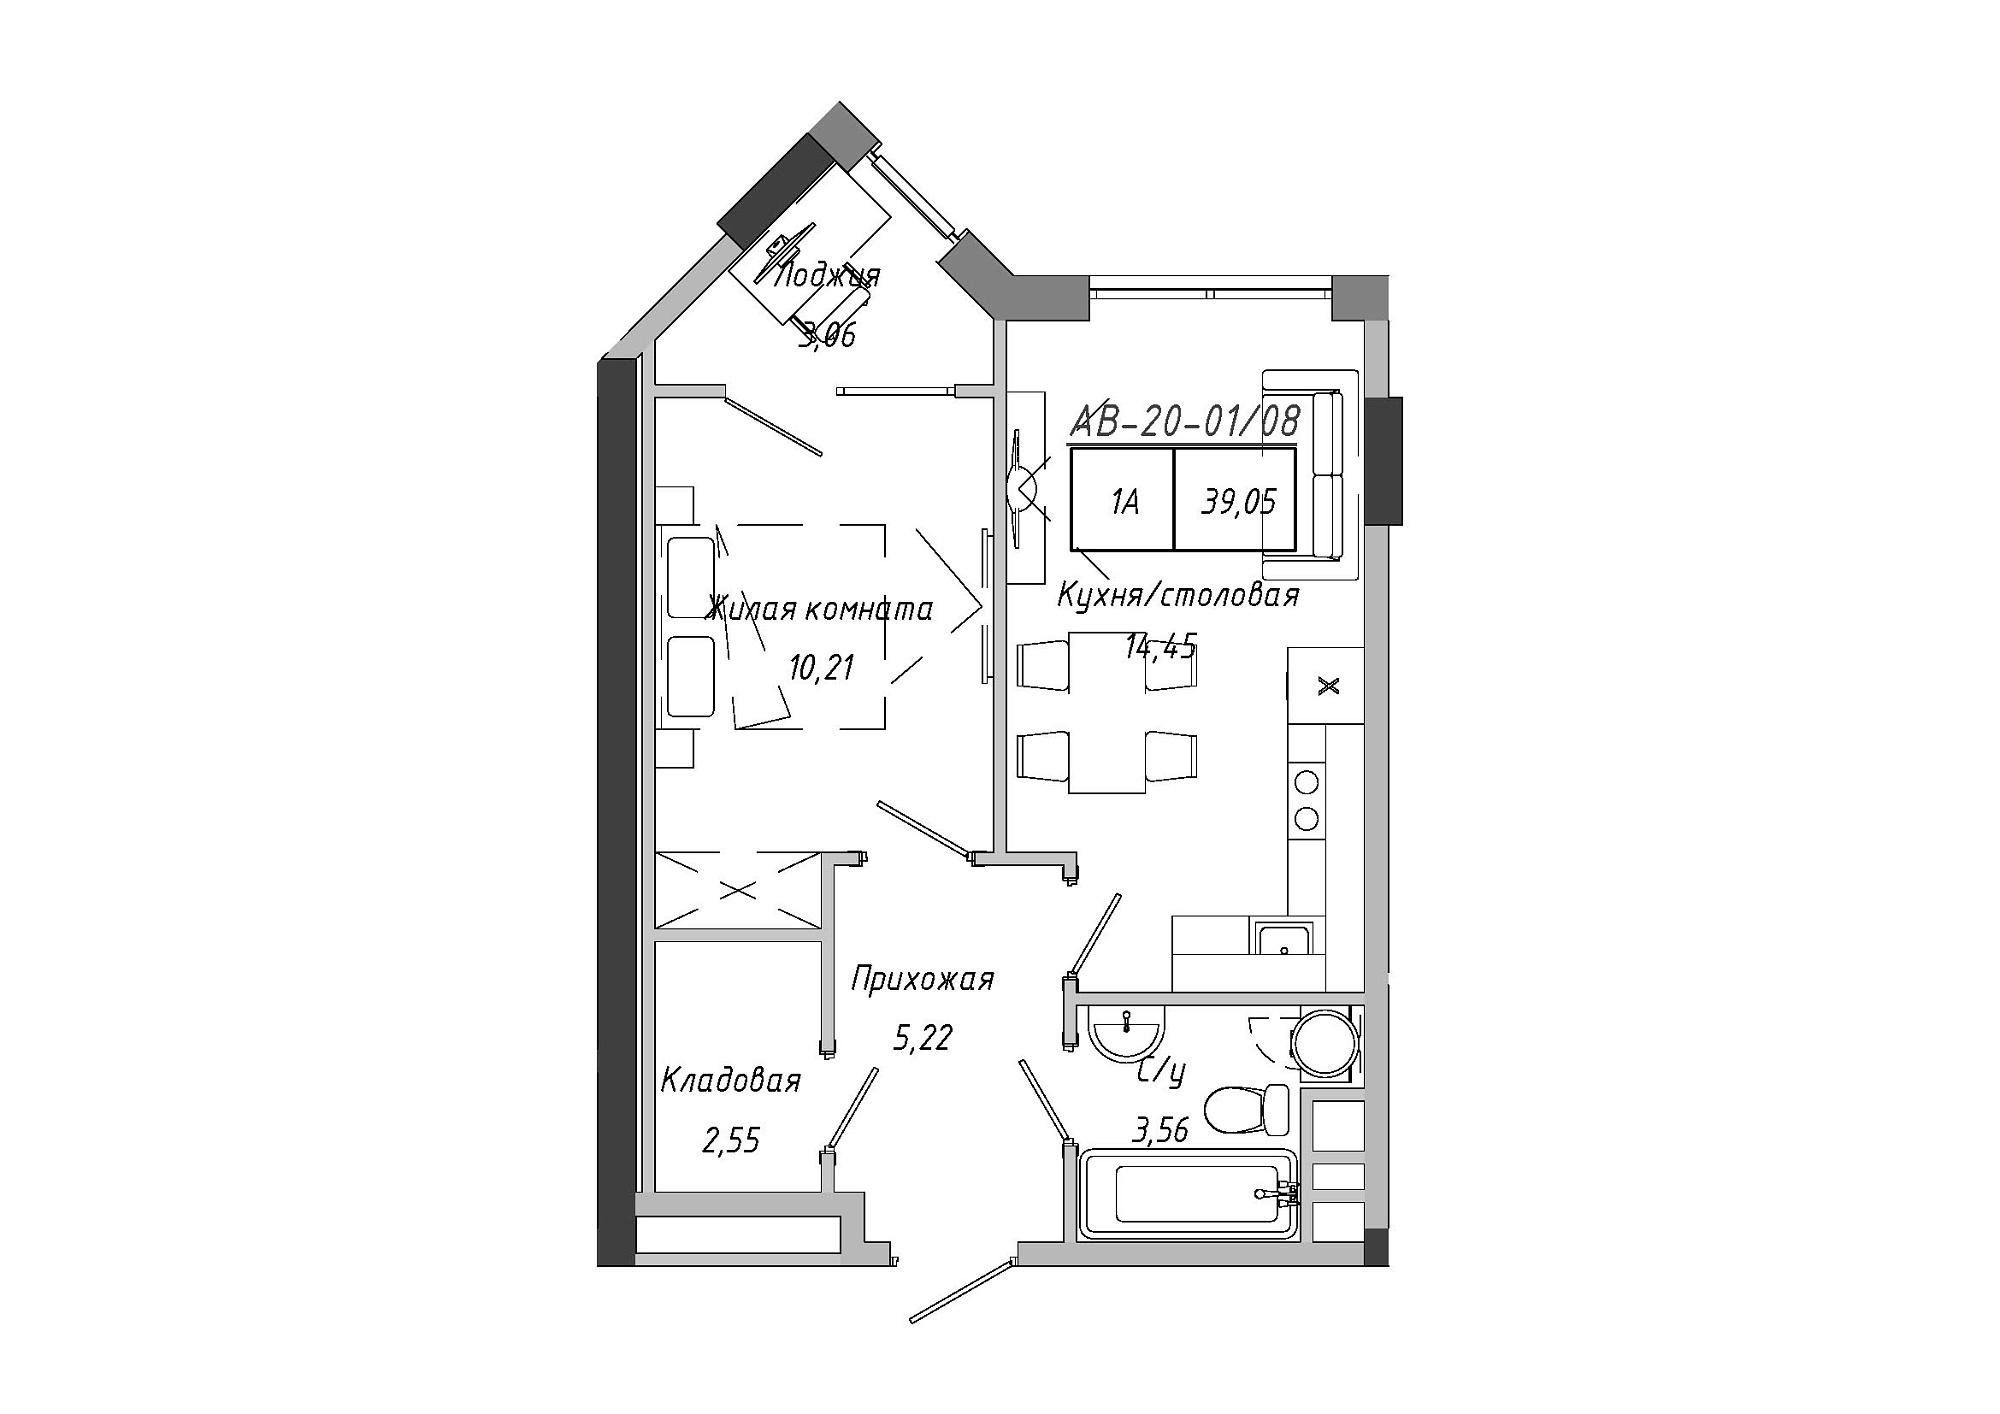 Планування 1-к квартира площею 39.05м2, AB-20-01/00008.